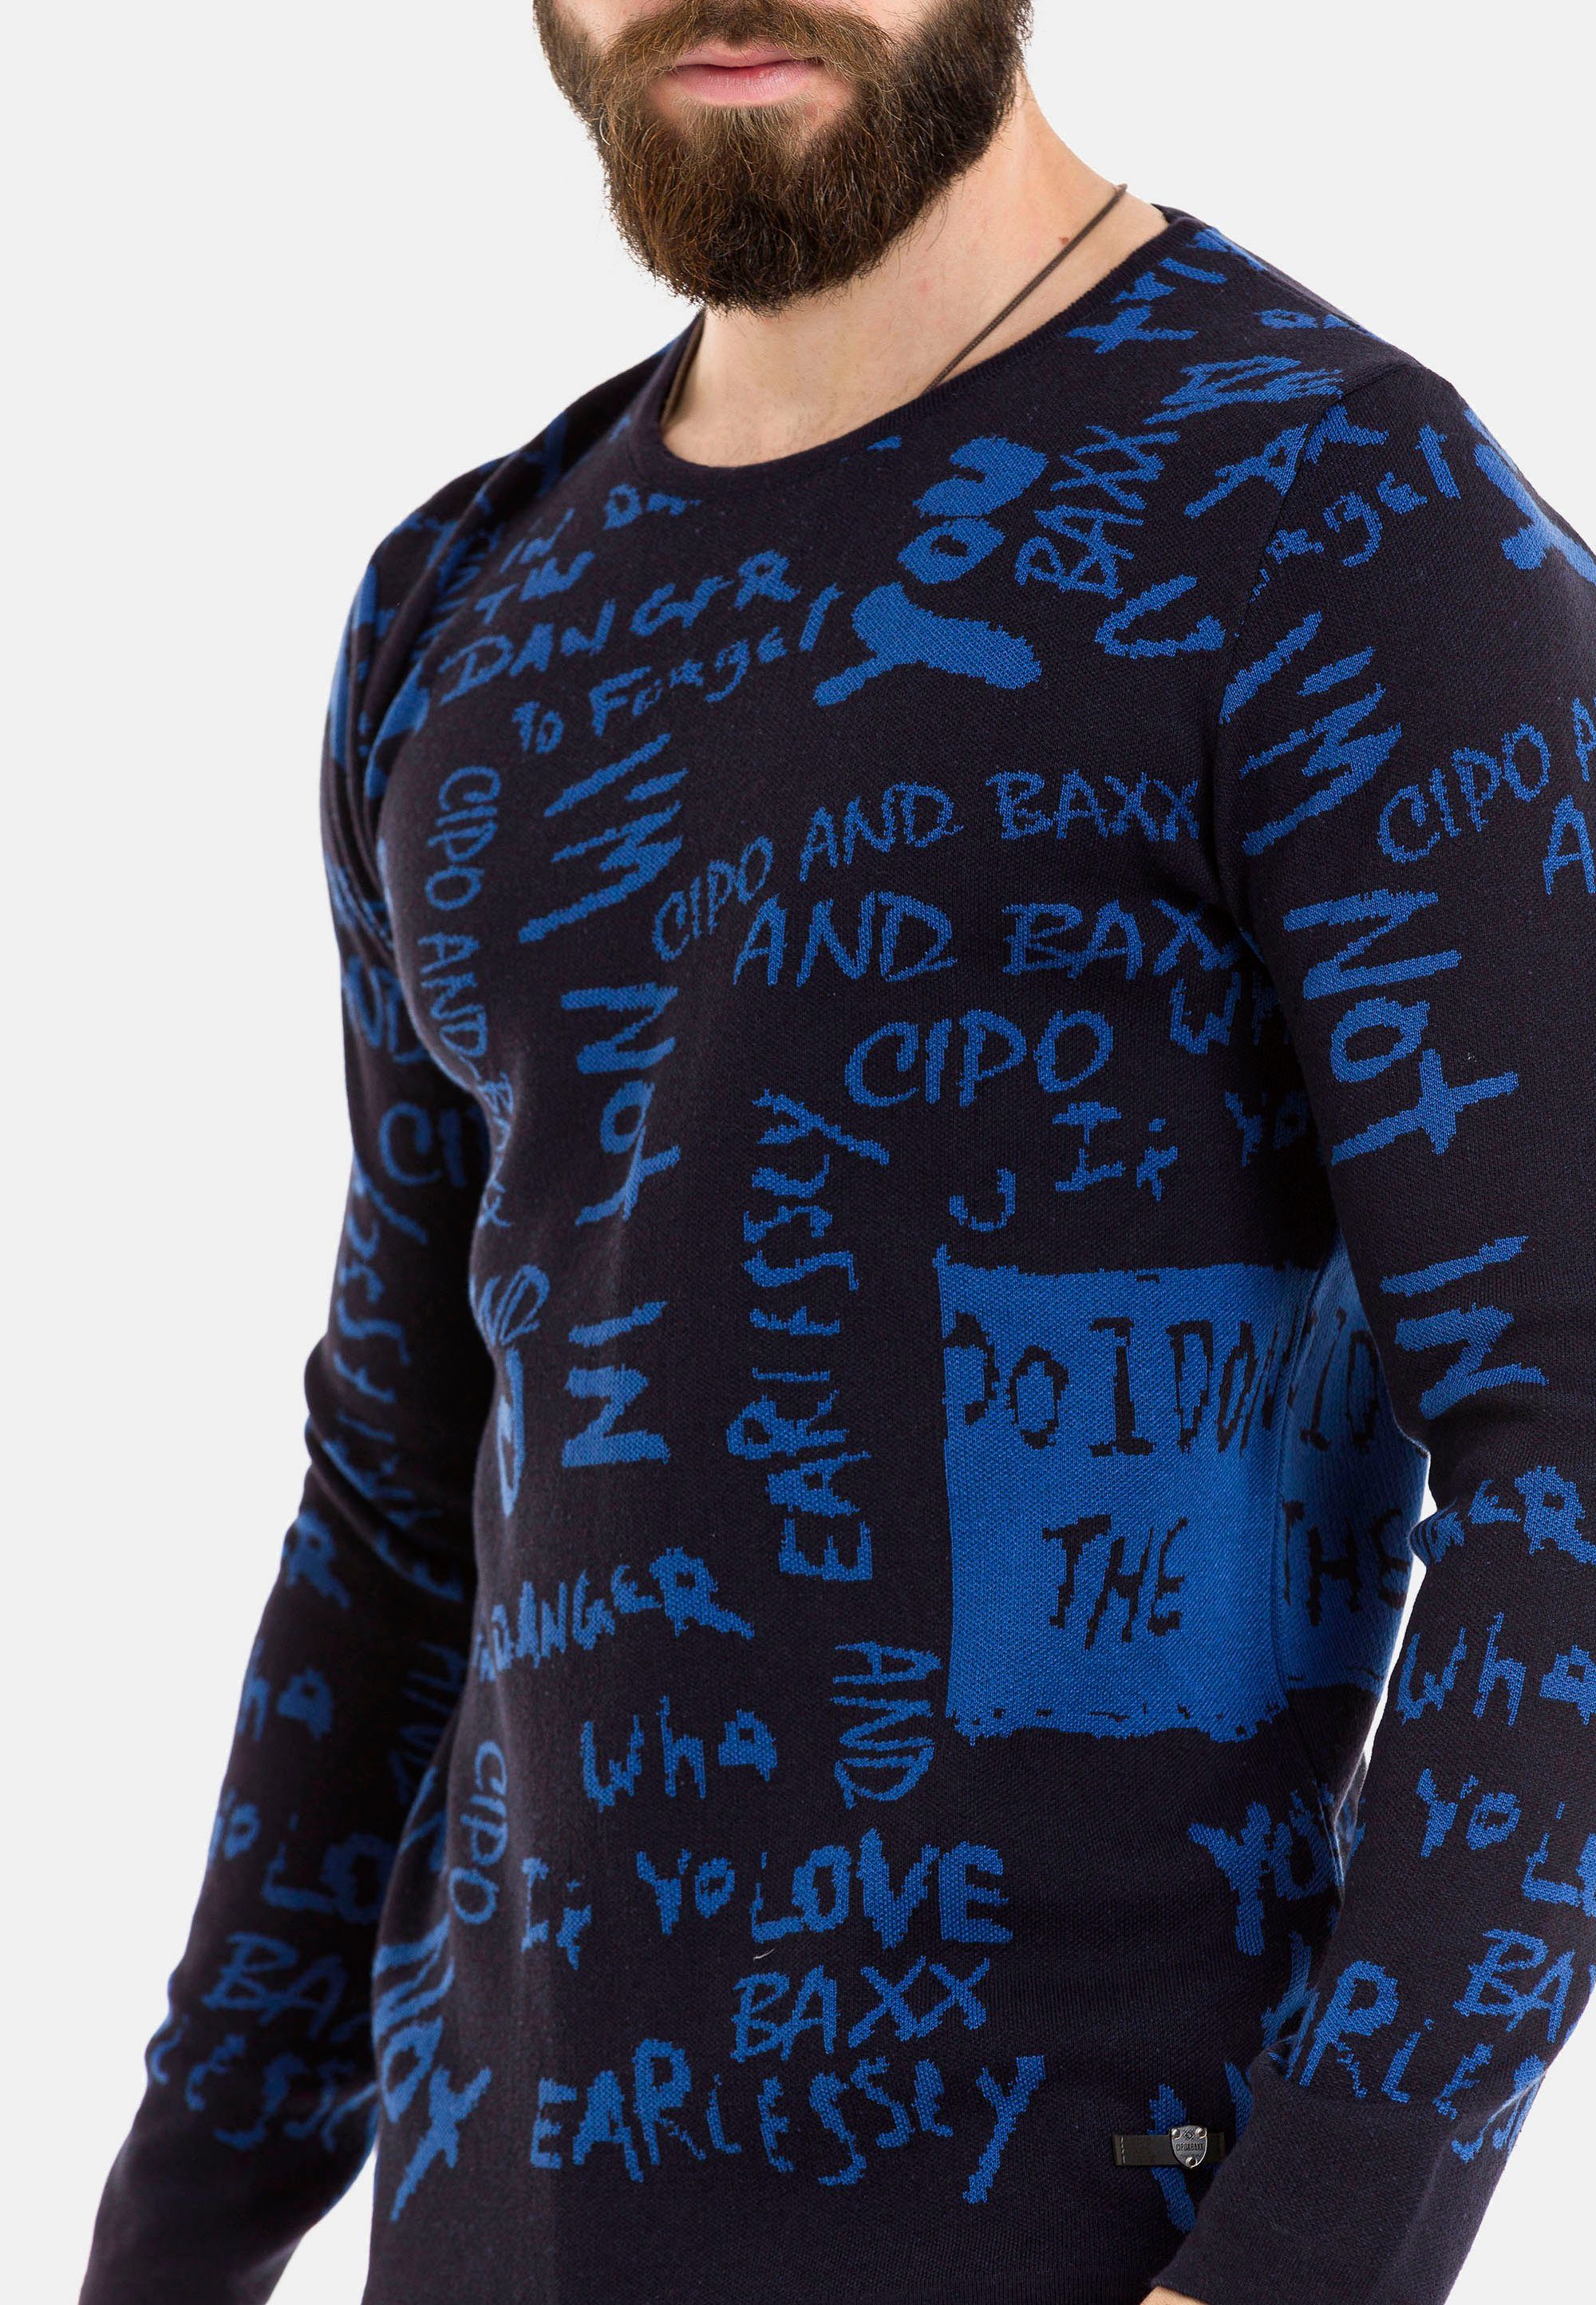 Strickpullover Cipo trendigem Baxx & mit blau Schriftzug-Design